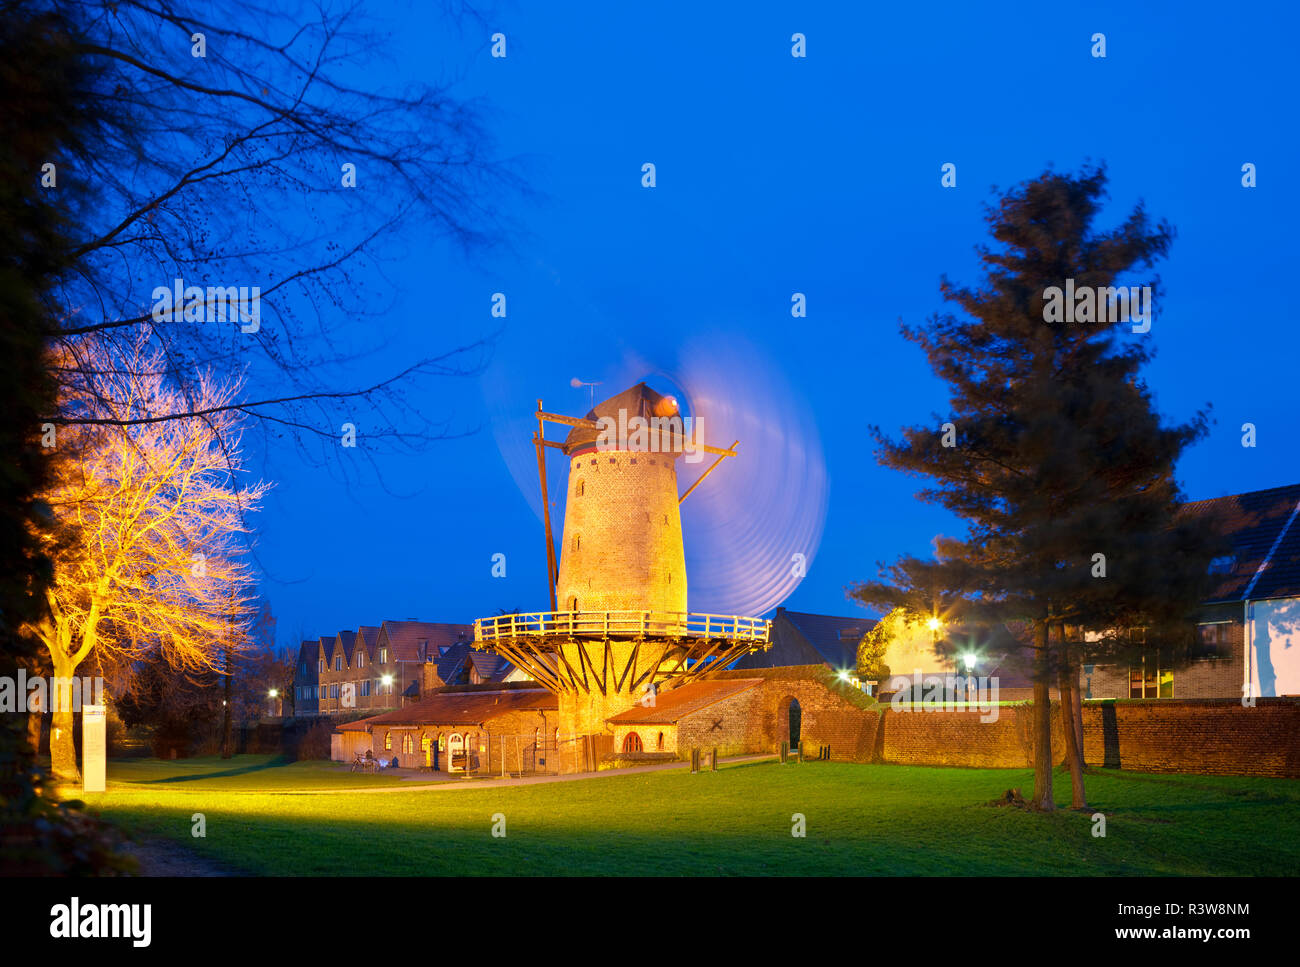 L'ancien moulin de Kriemhild (Kriemhild-Muehle) fait partie de l'enceinte de Xanten, Allemagne. Photo de nuit avec ciel bleu profond. Banque D'Images